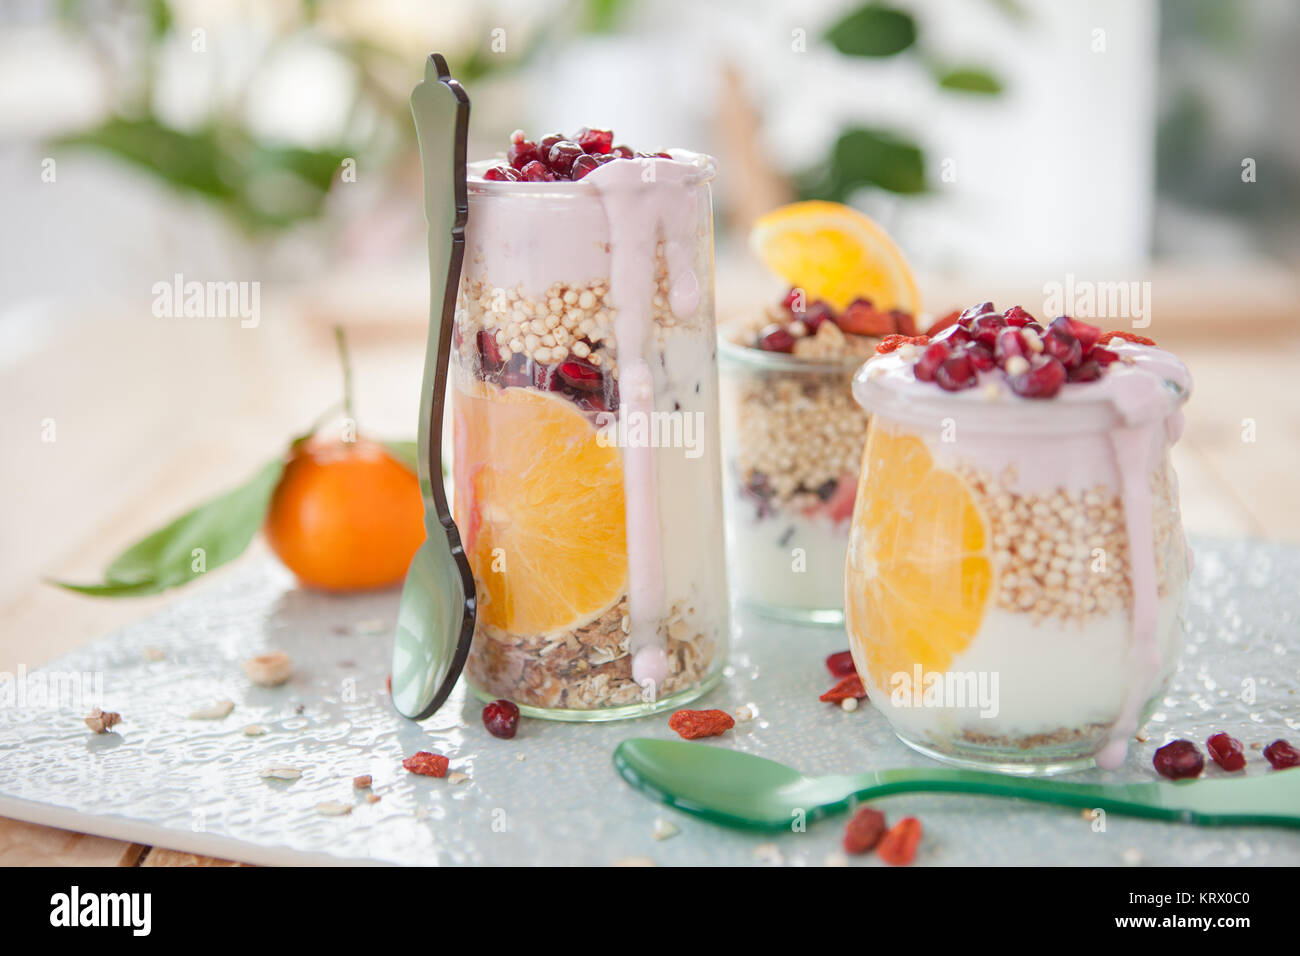 Muesli mit Joghurt und frischen Fruechten Stock Photo - Alamy